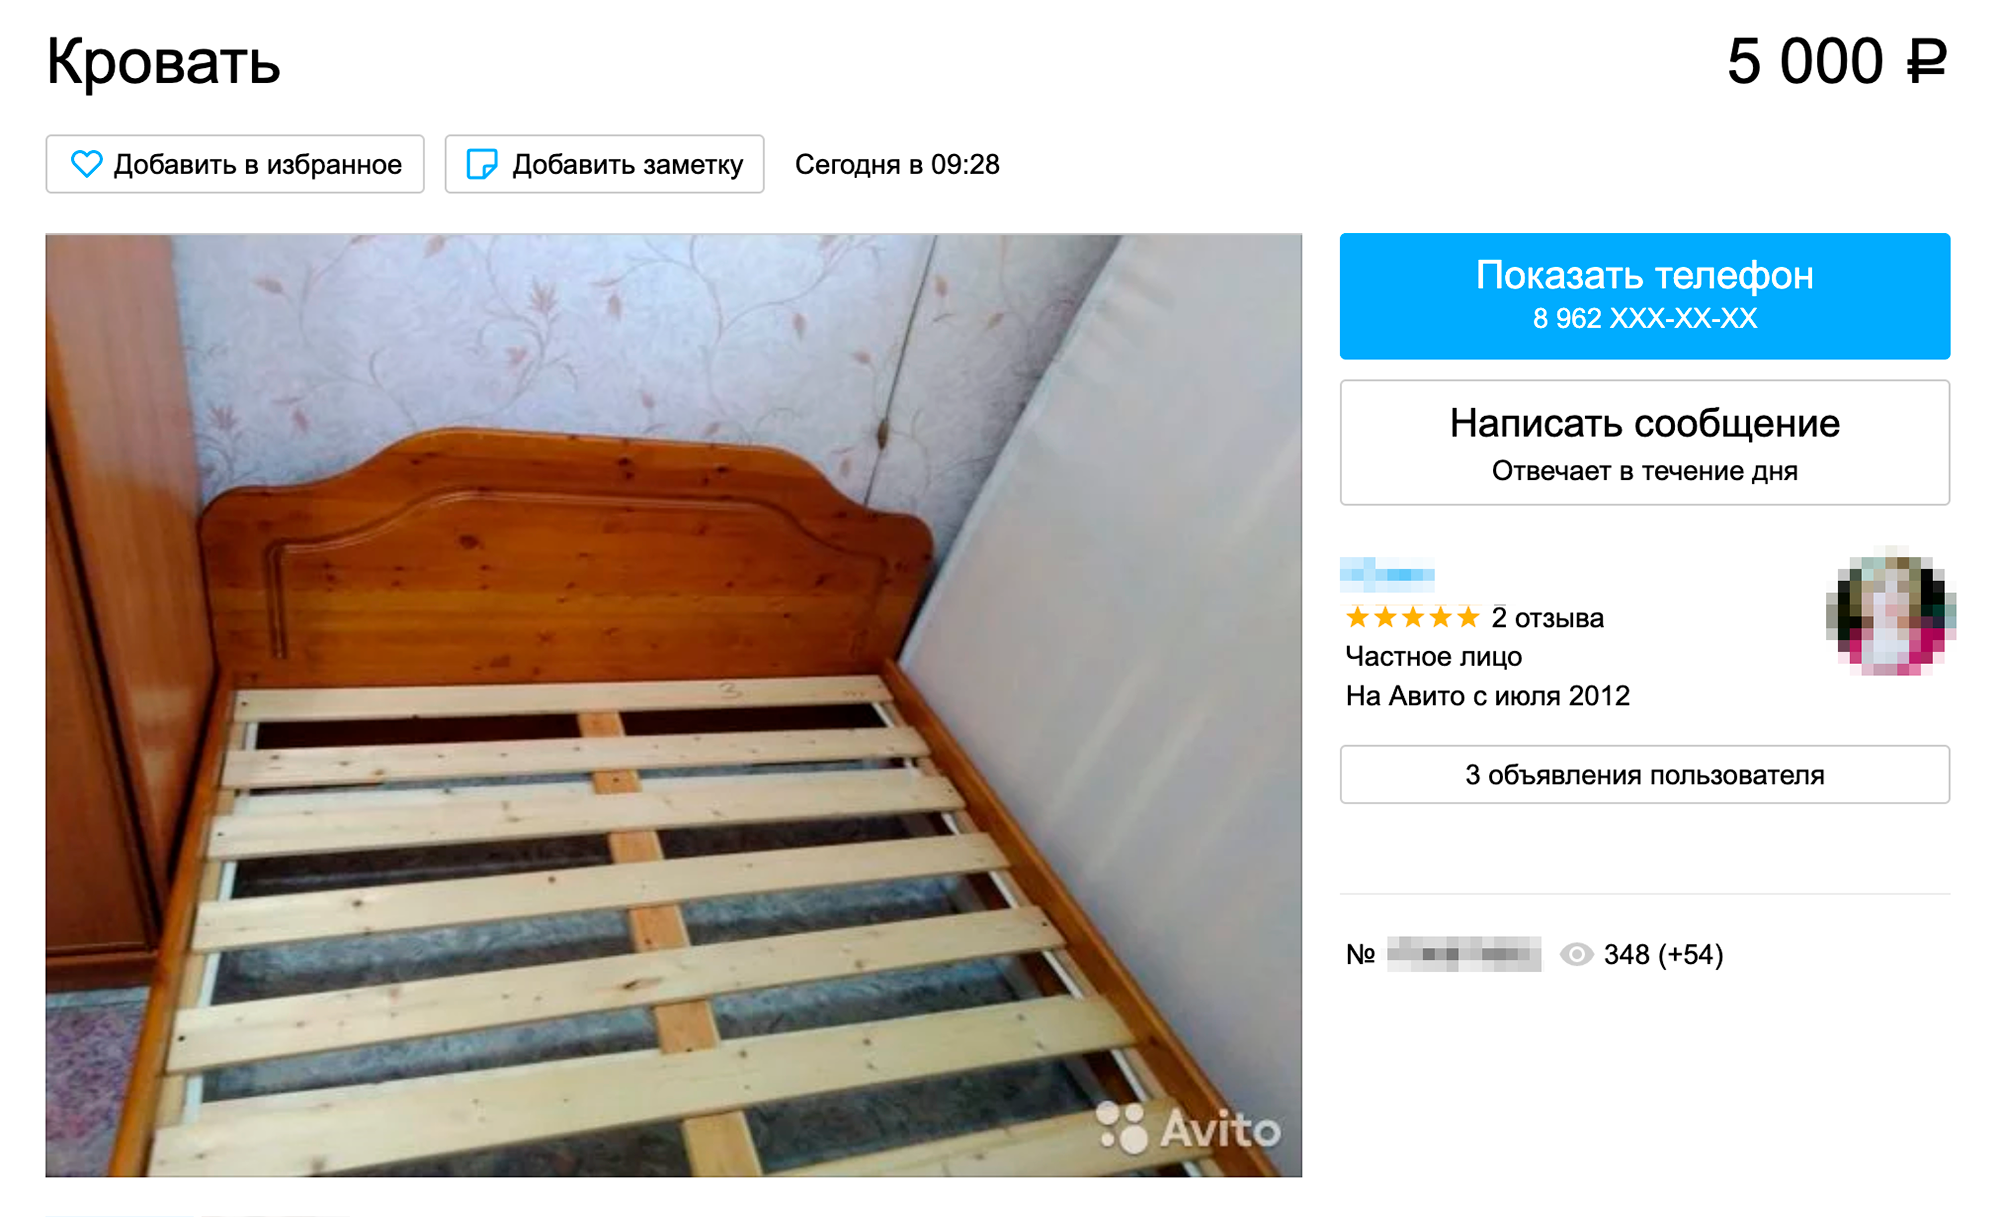 Кровать и диван в нормальном состоянии продают за 3—5 тысяч